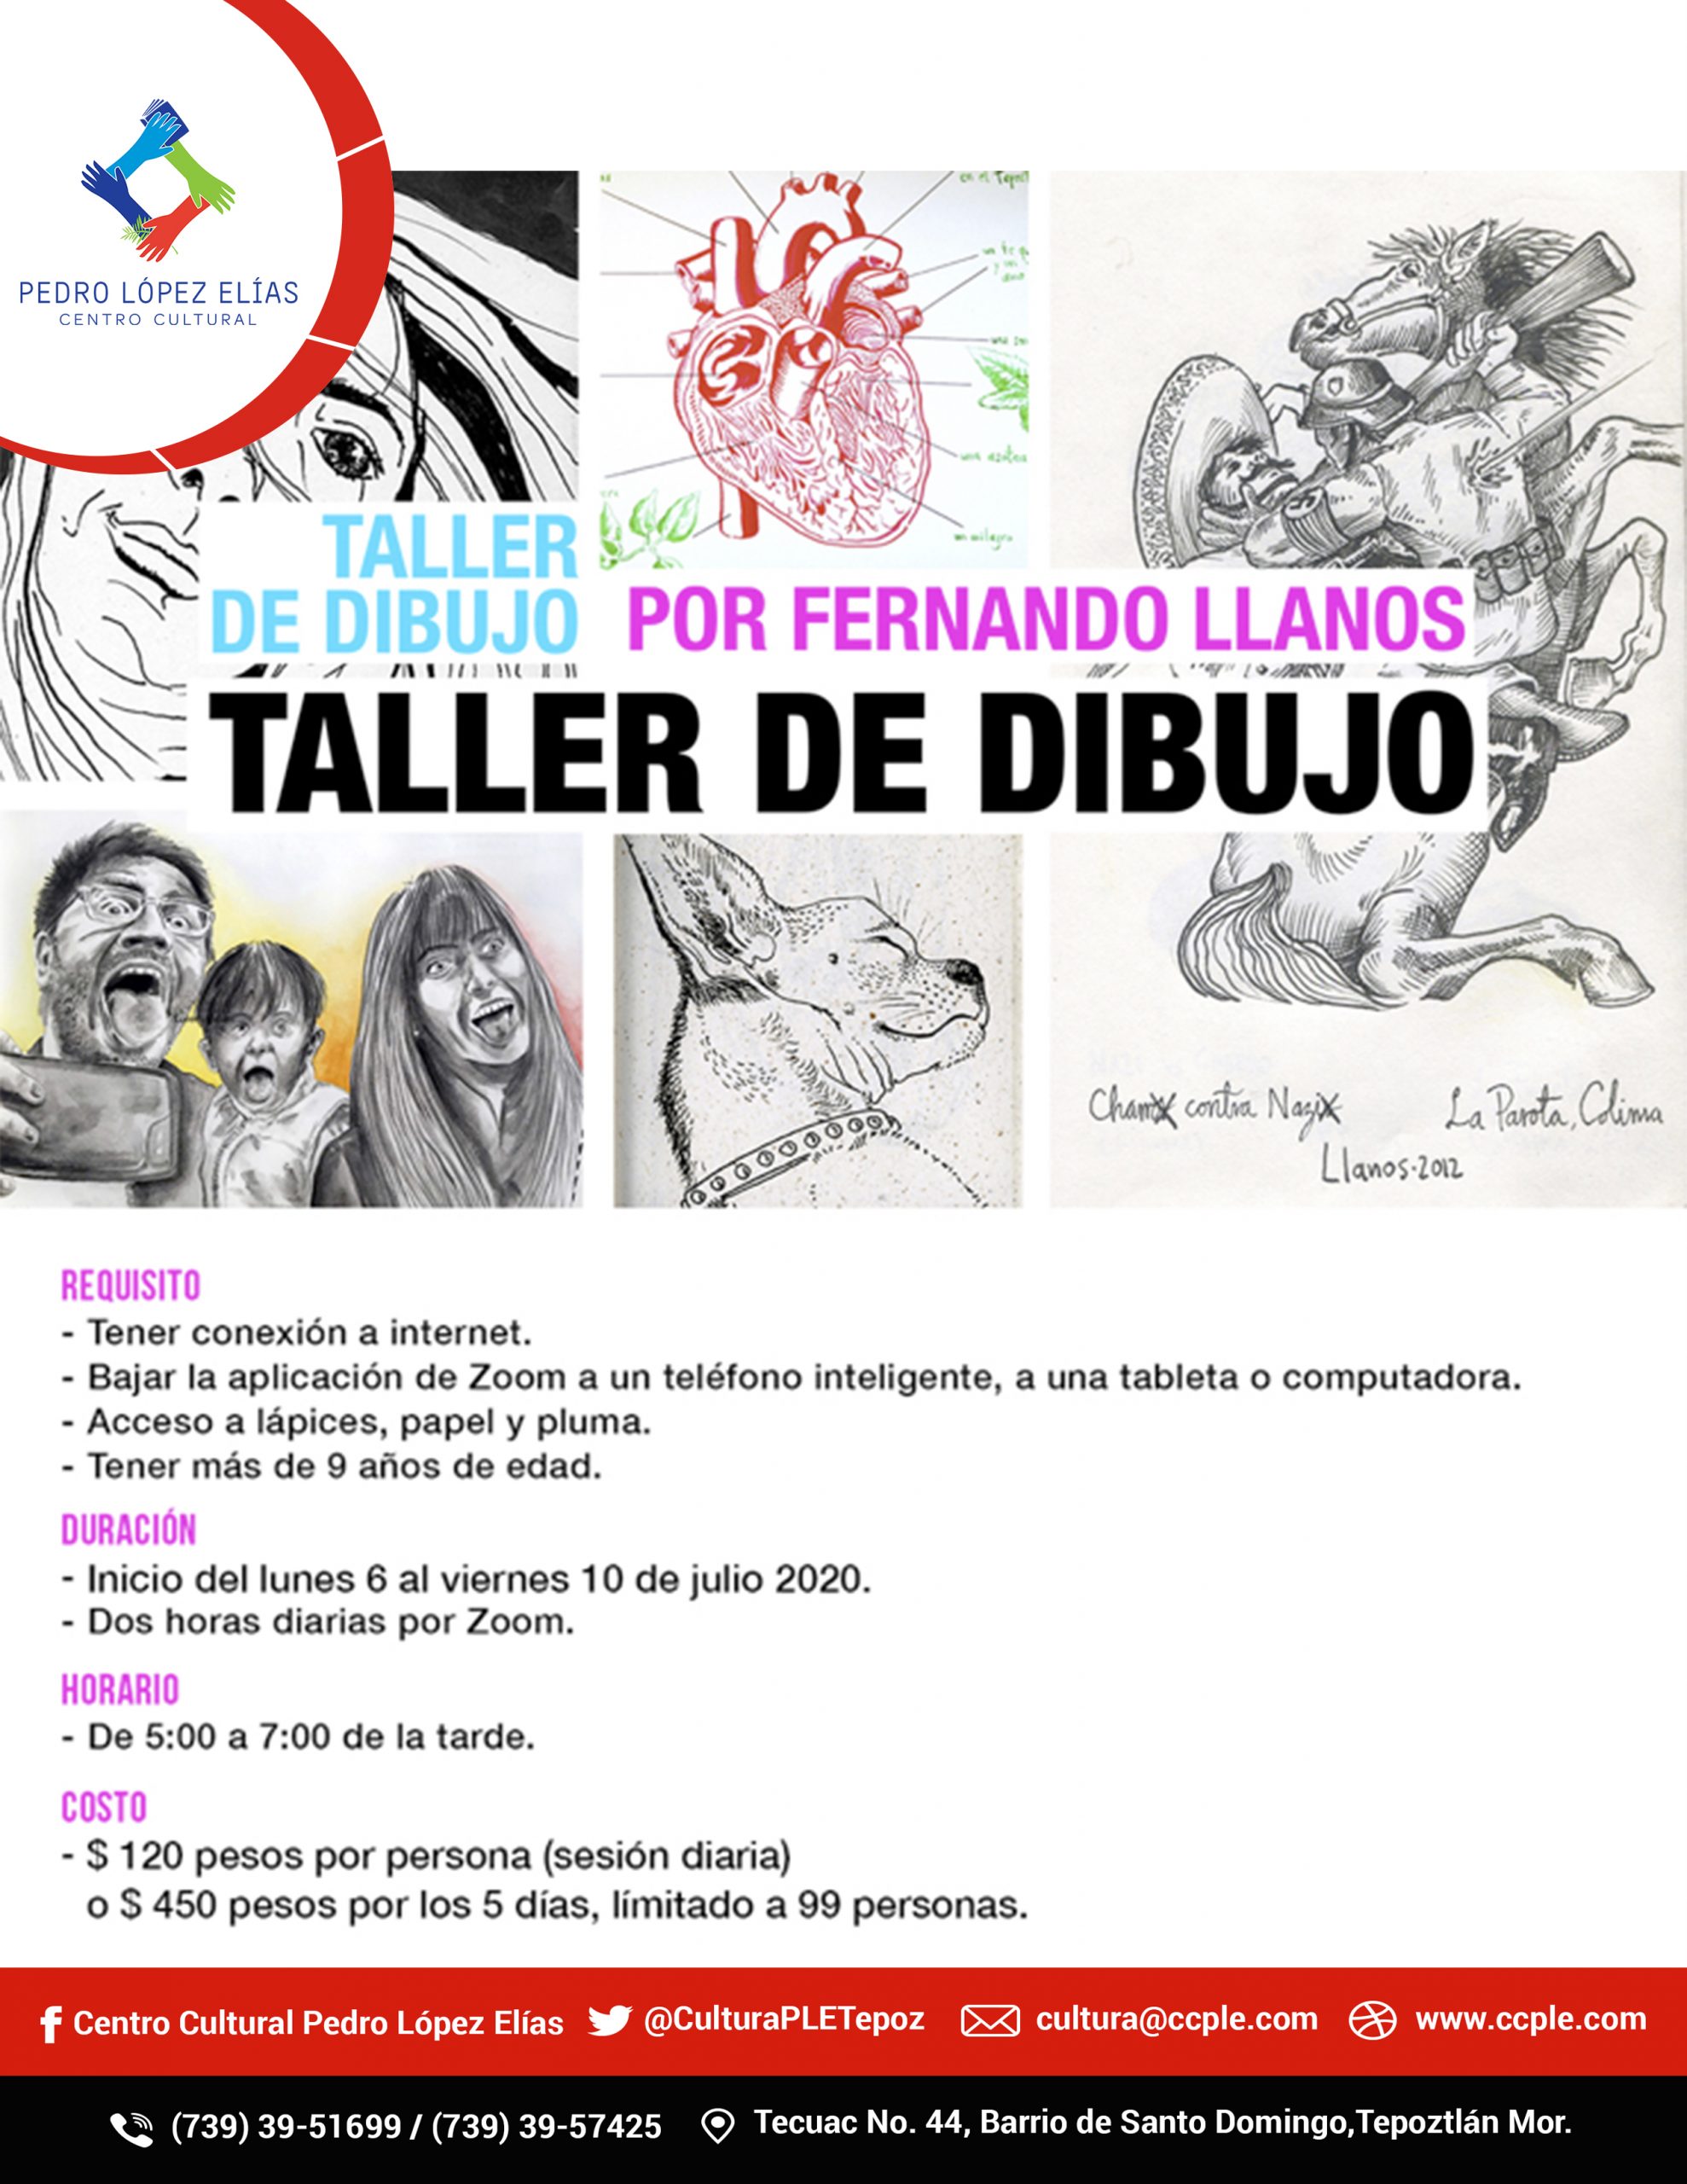 El Centro Cultural Pedro López Elías Brinda Taller virtual de Dibujo con Fernando Llanos